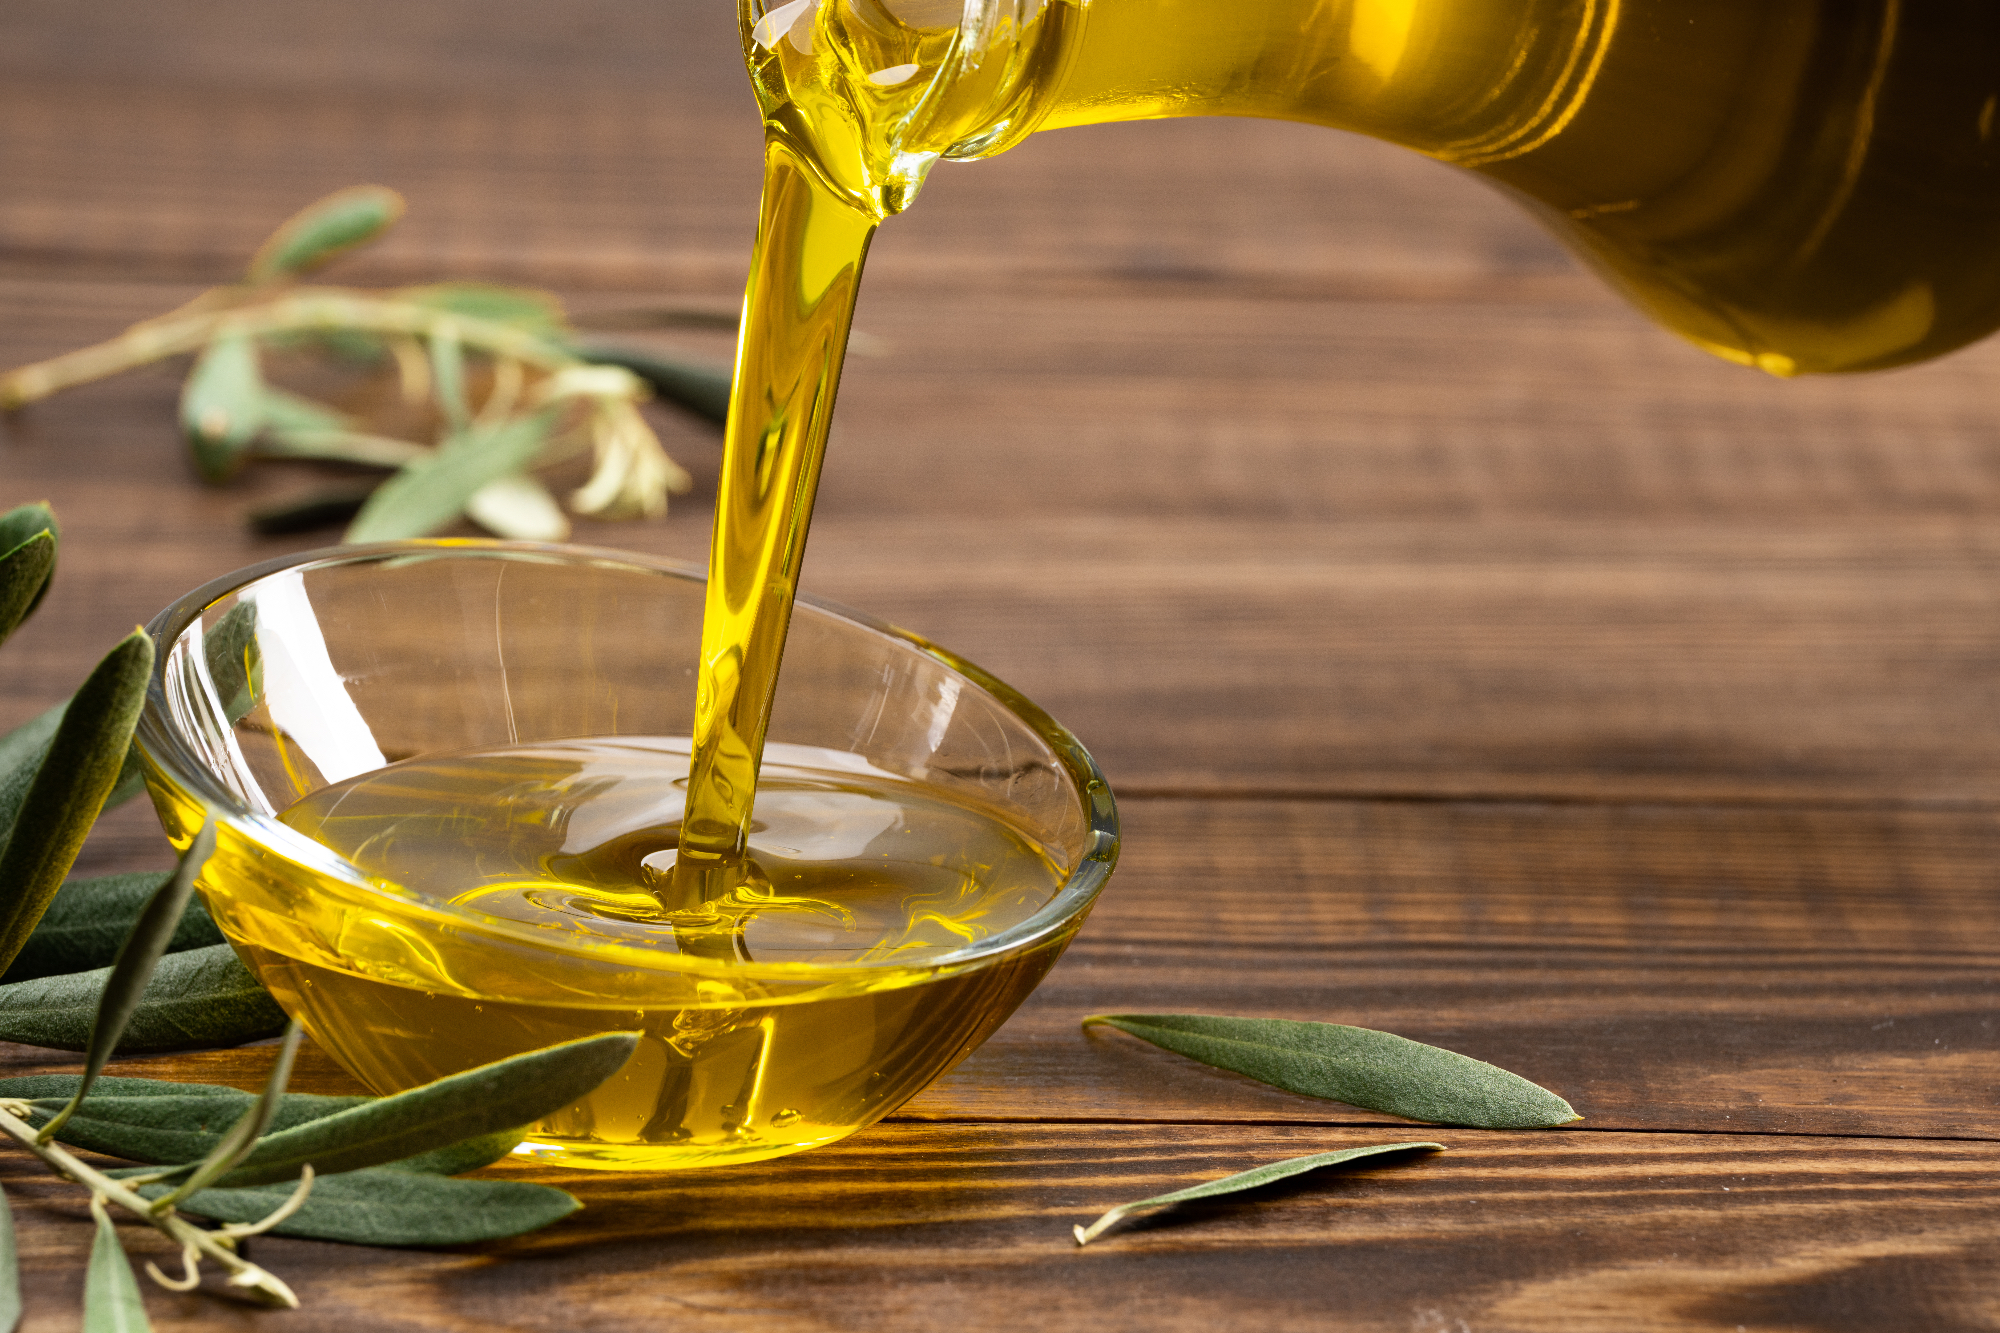 Ekstra deviško oljčno olje slovenske Istre je olje naše izbire